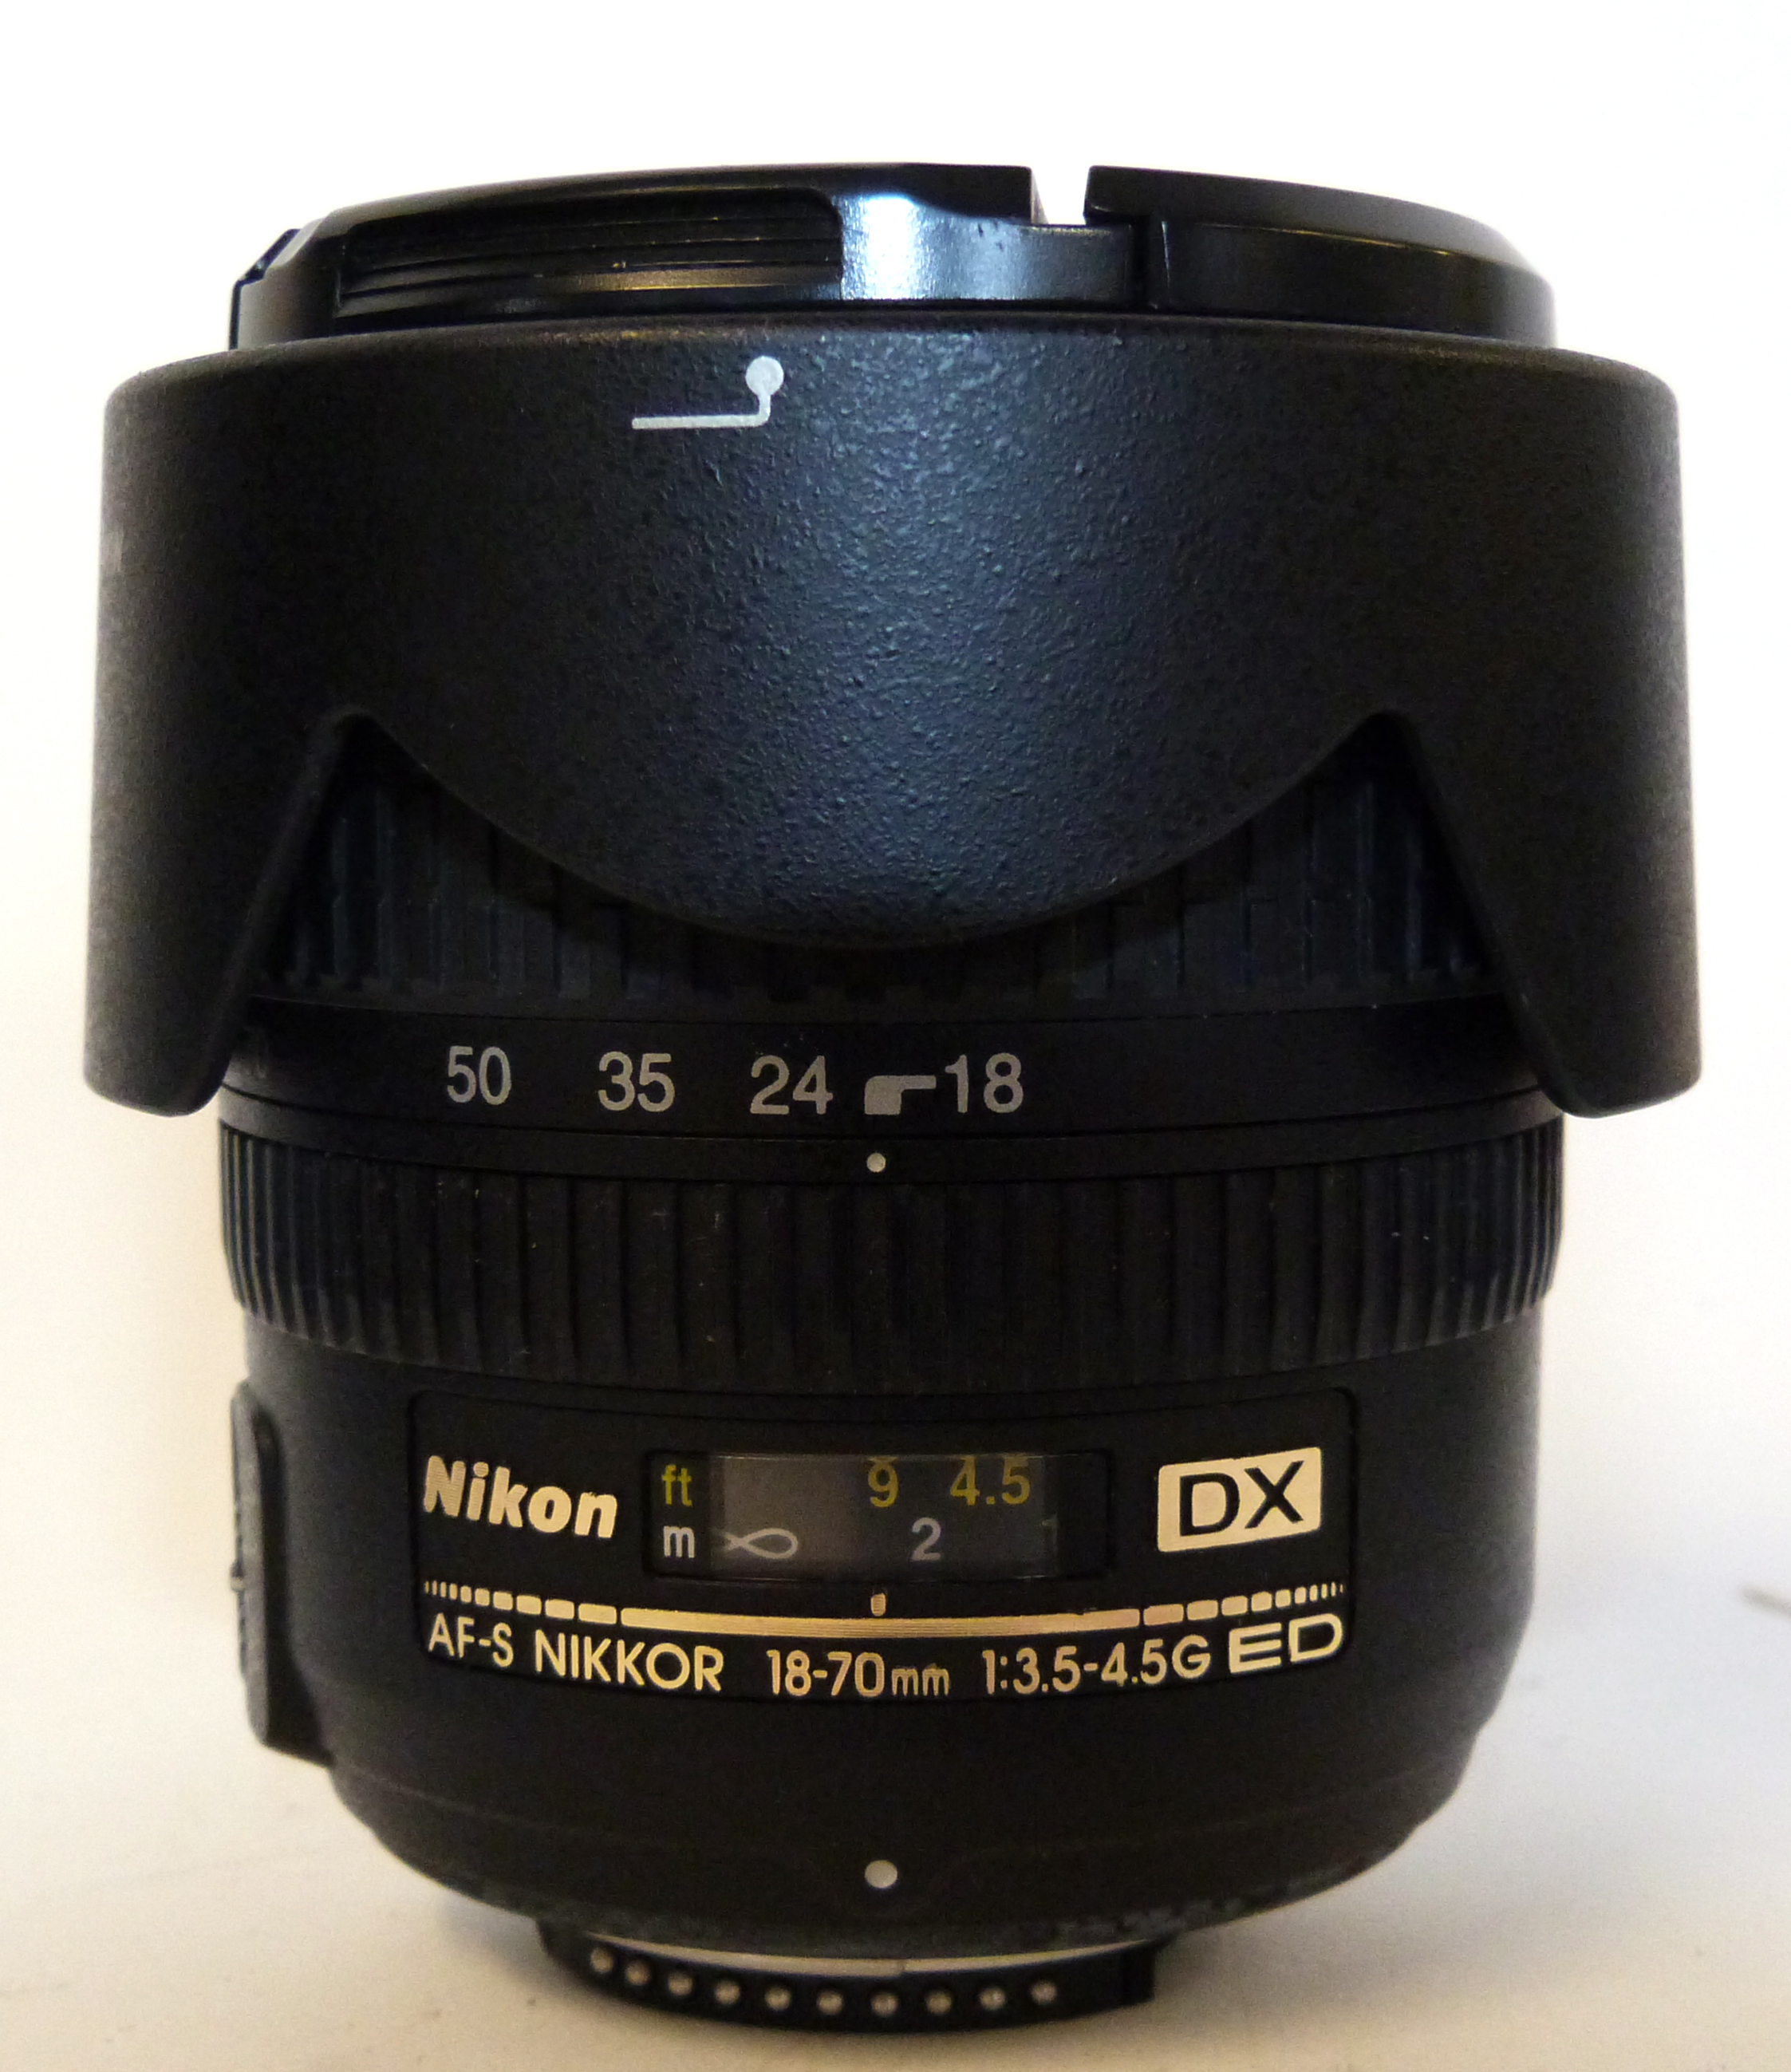 Nikon D70 digital camera together with Nikon AF-S Nikkor 18-70mm lens, charger and fitted case - Image 5 of 6